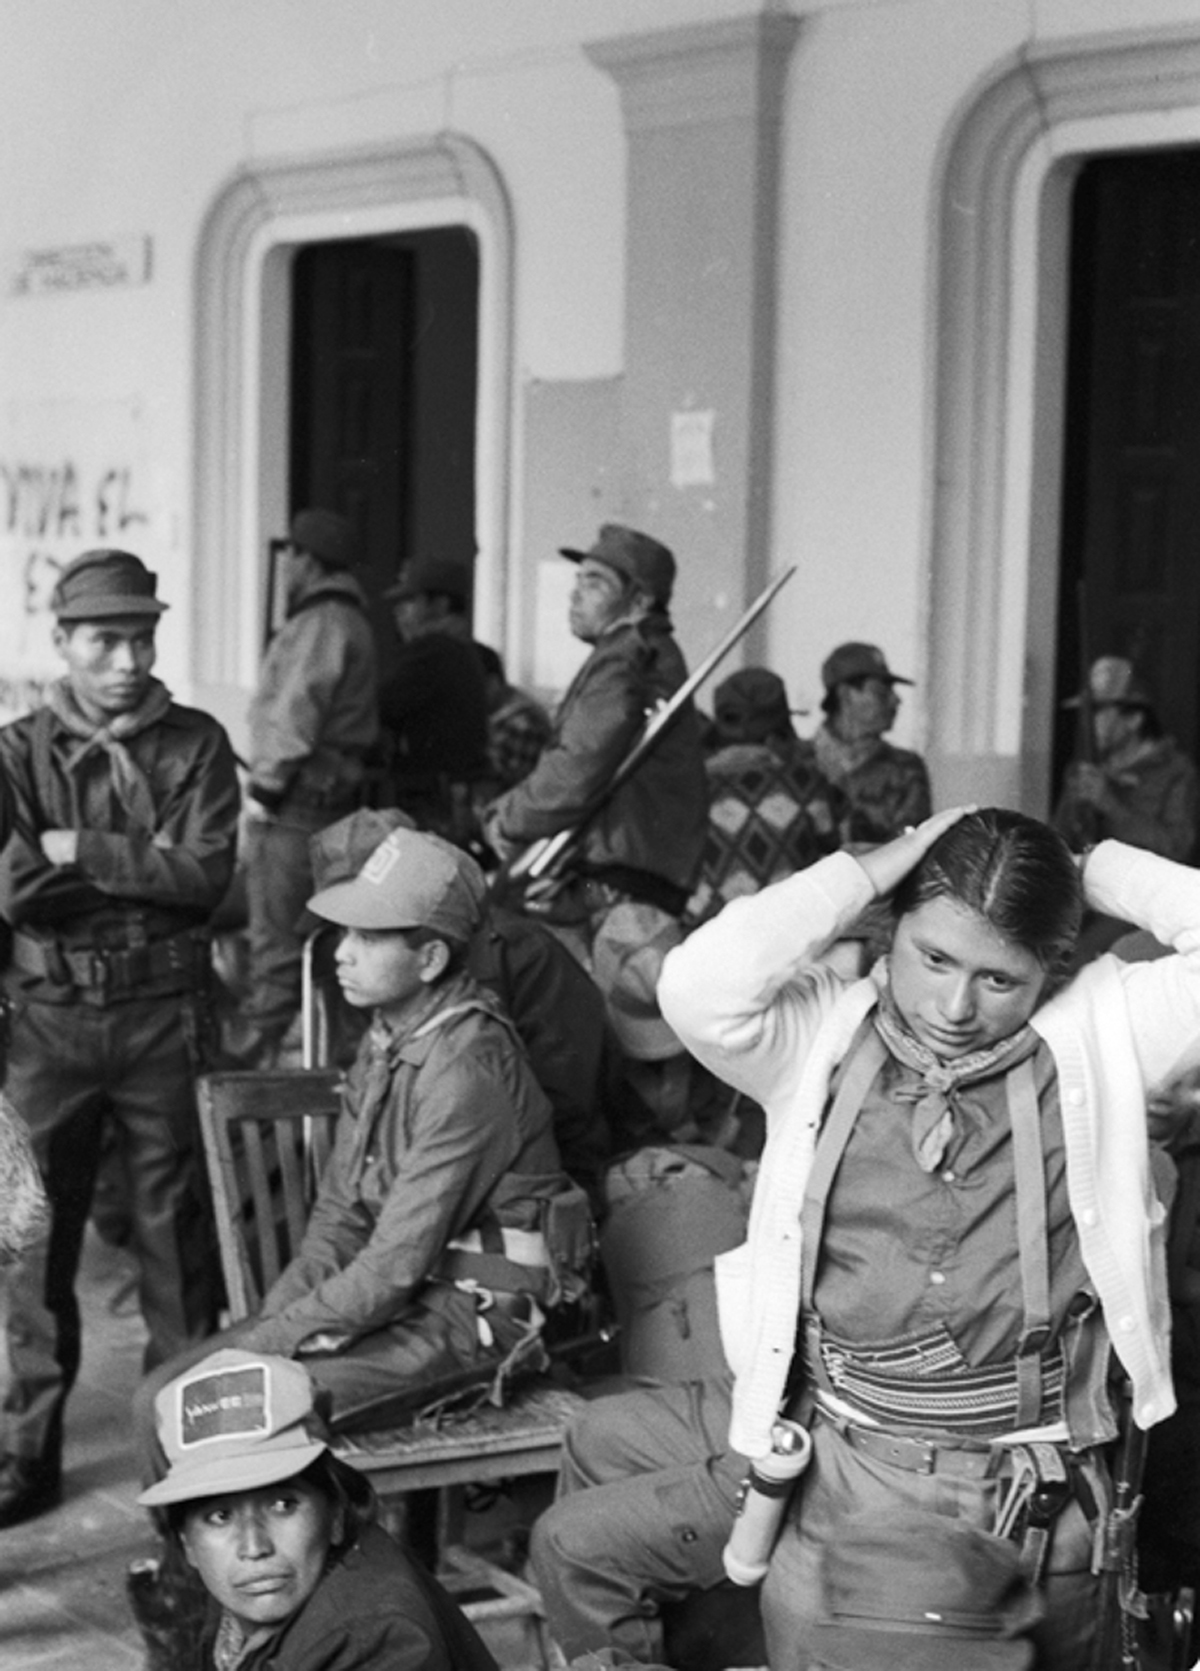 Guerrilleras Zapatistas / Zapatista Guerrillas